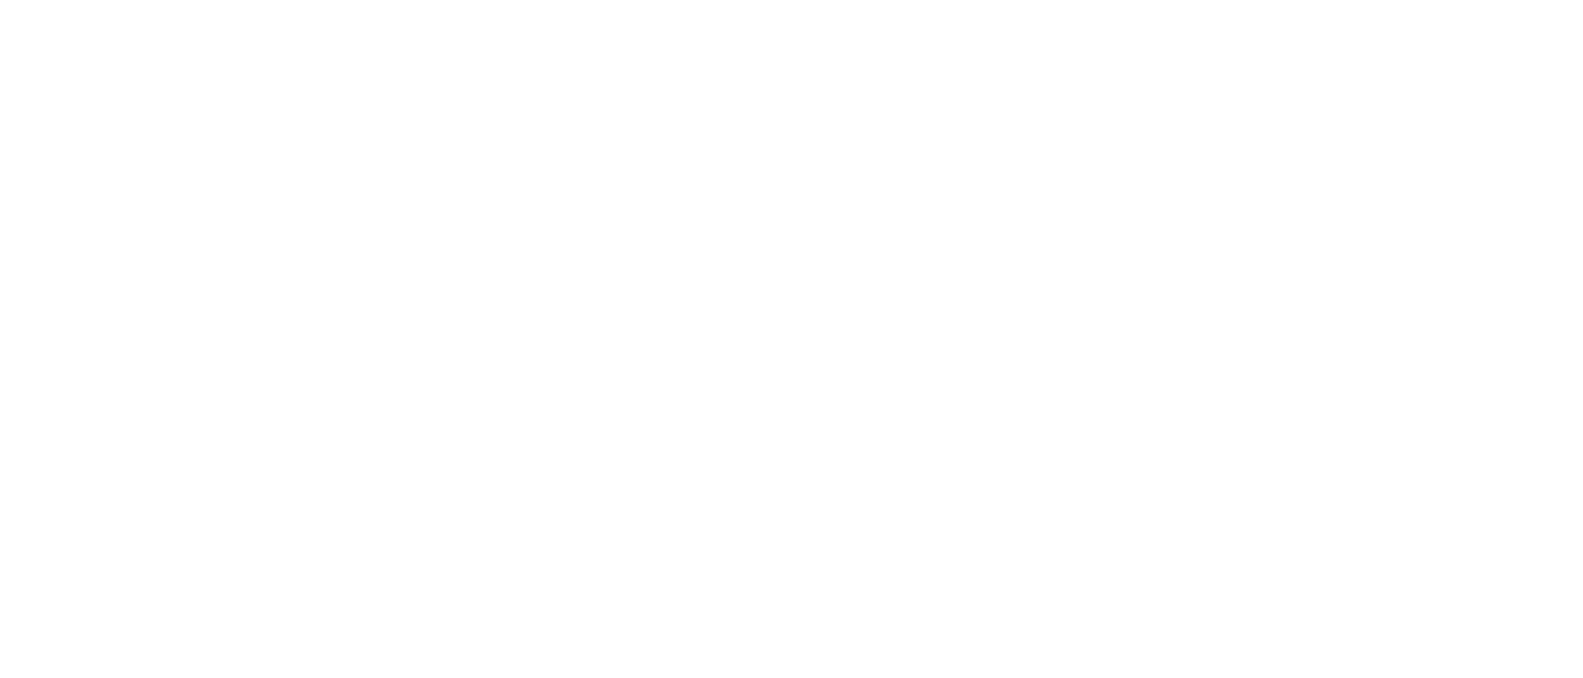 Orkla logo large for dark backgrounds (transparent PNG)